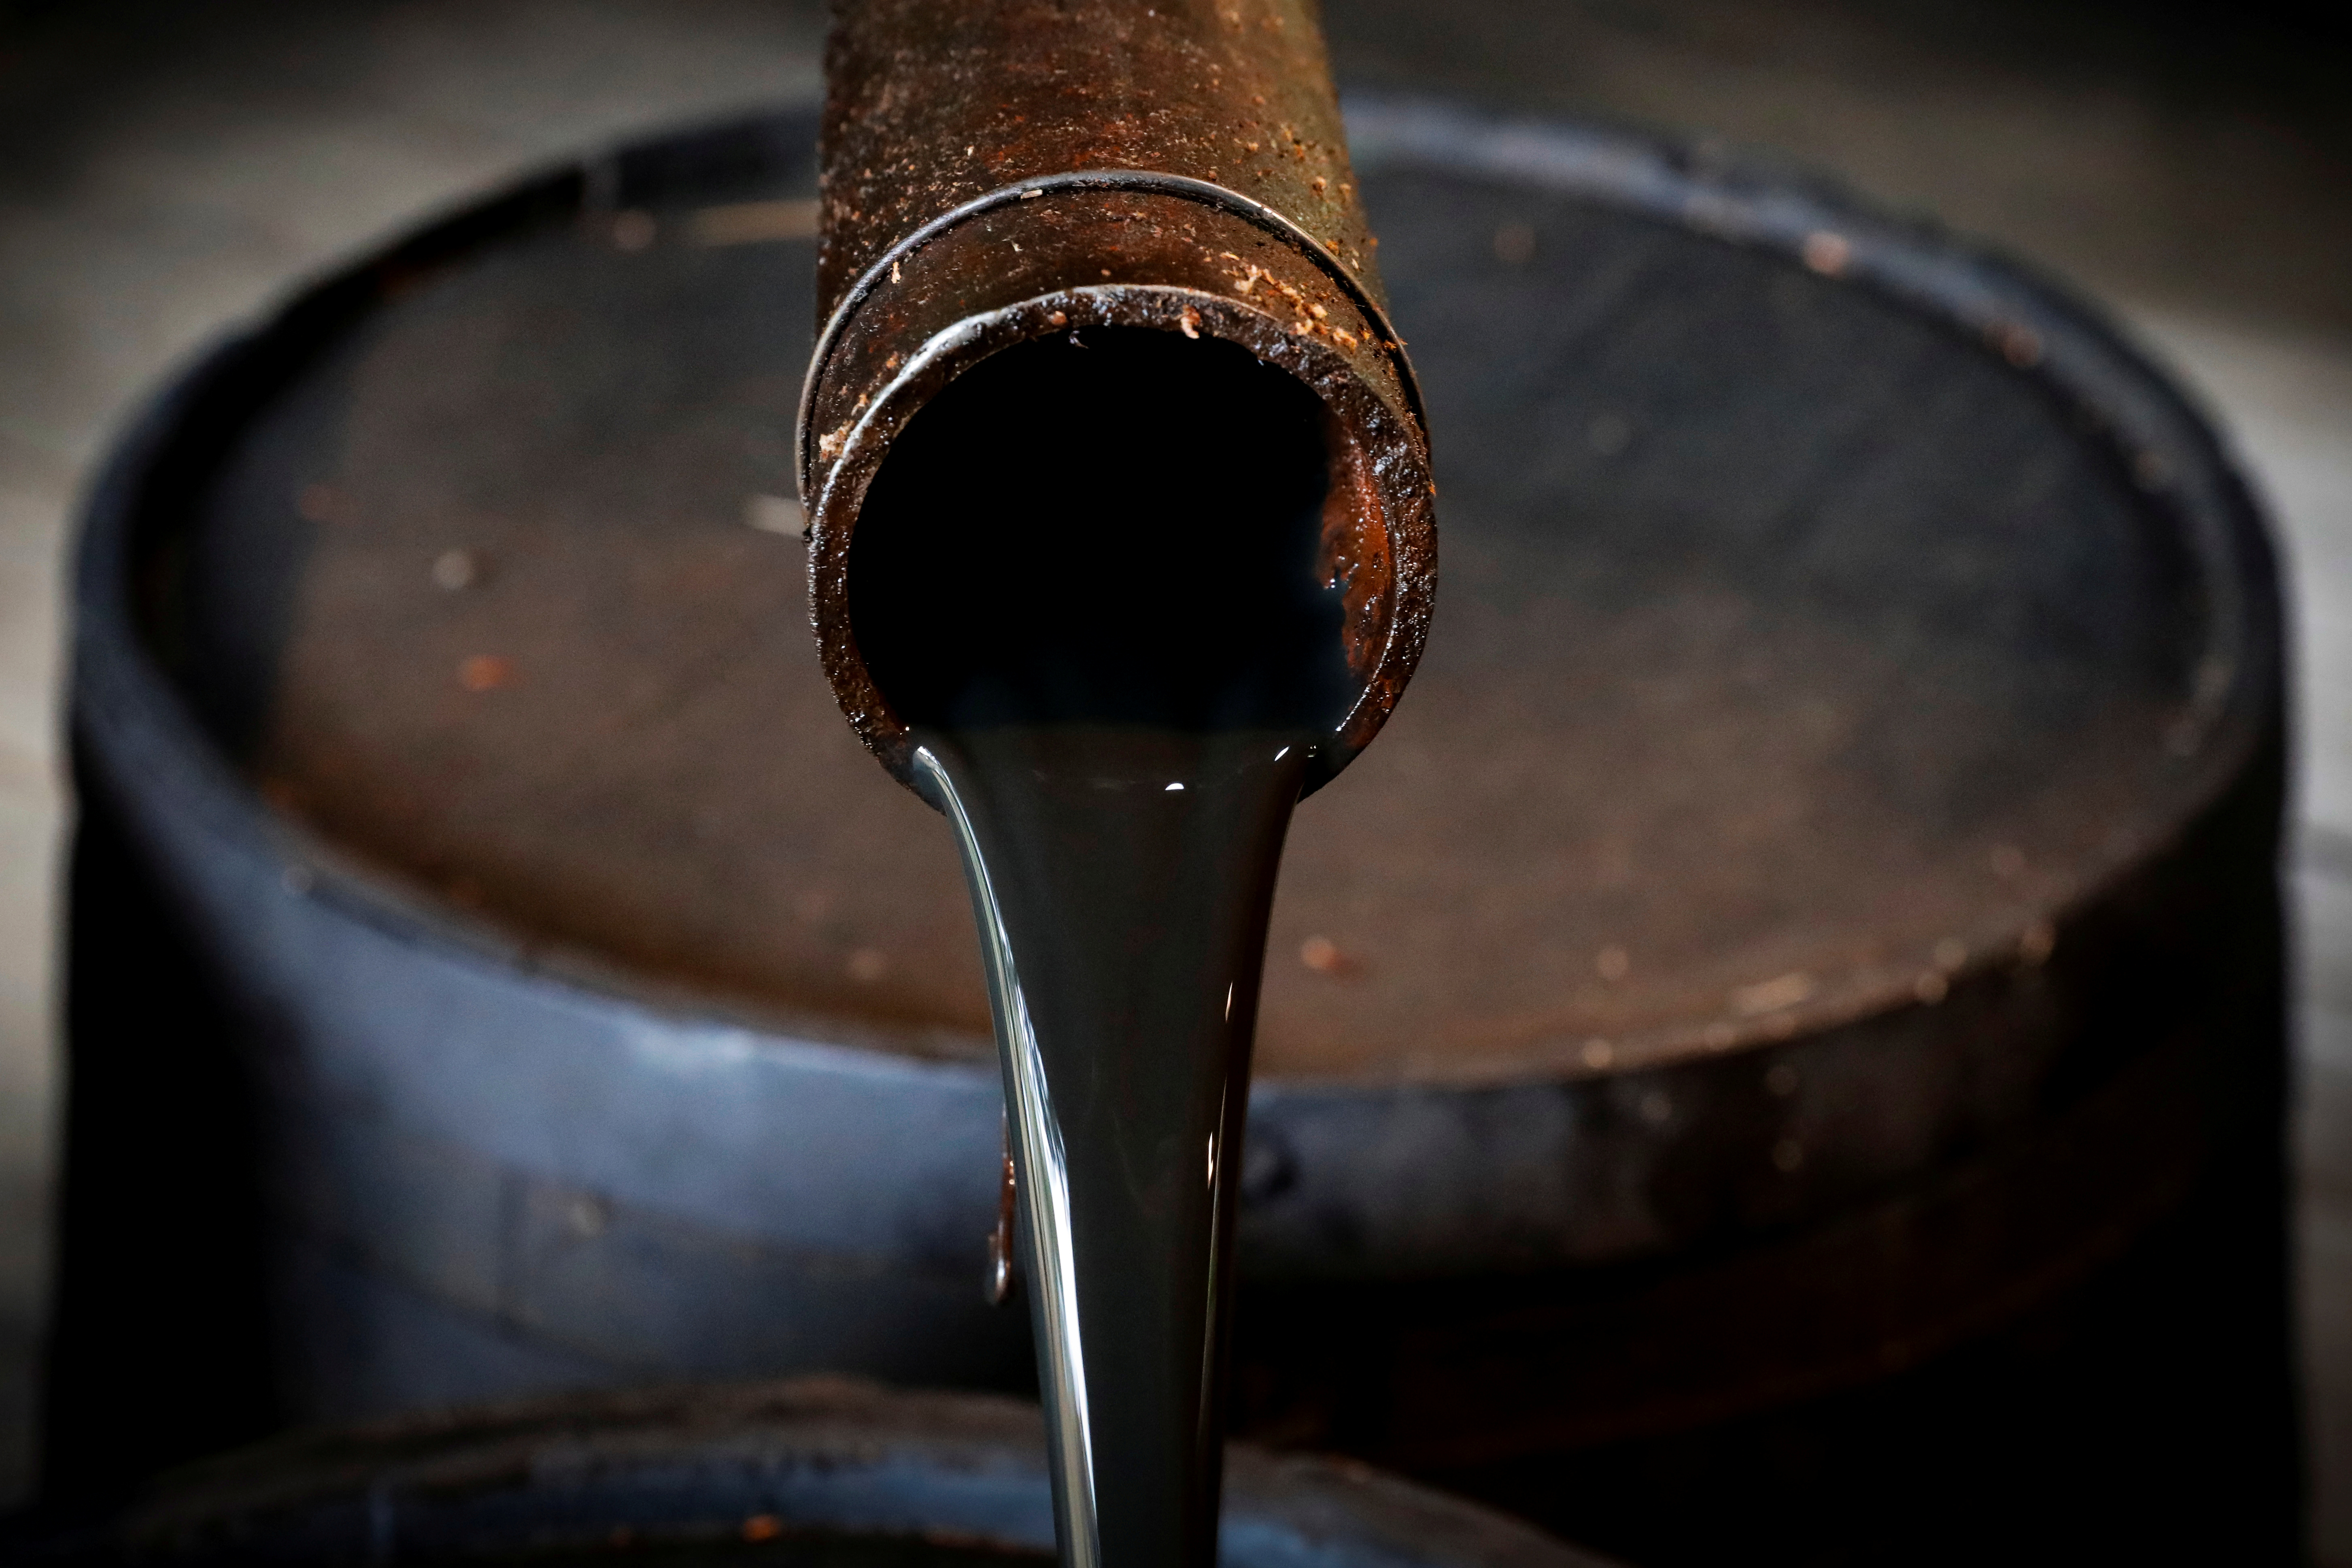 Petróleo se estabiliza luego de reapertura progresiva de oleoducto tras ciberataque